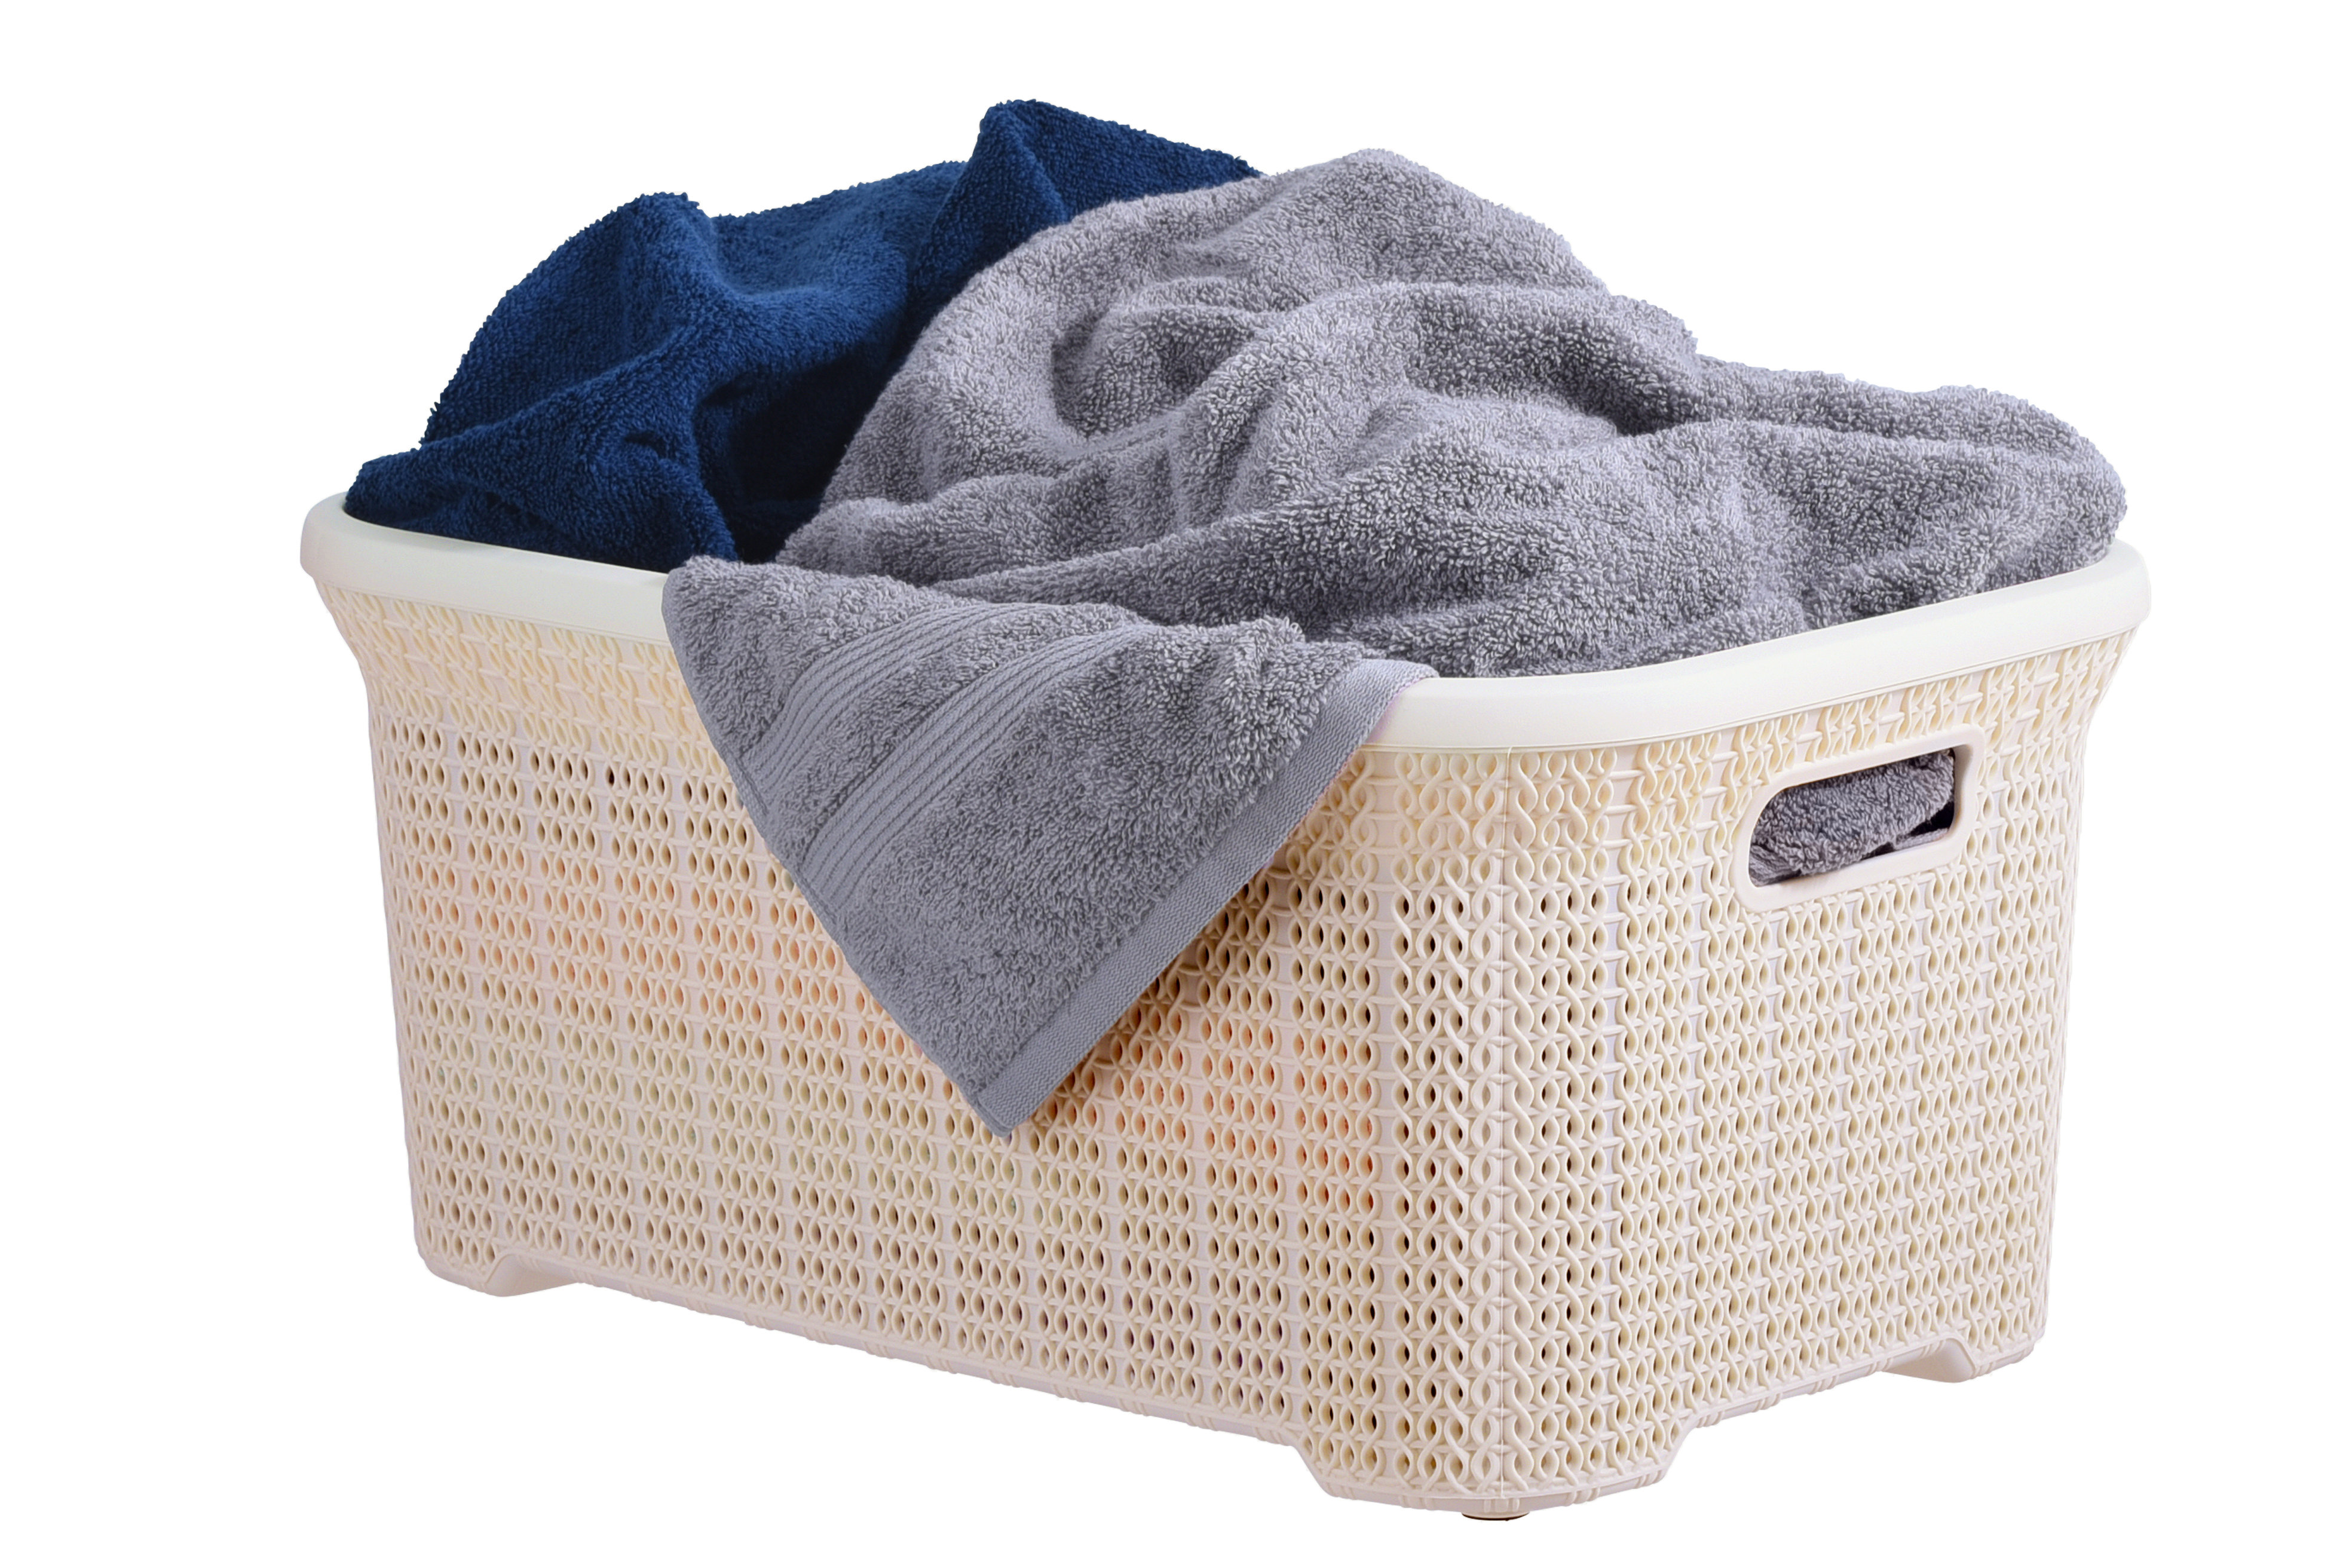 https://assets.wfcdn.com/im/10712766/compr-r85/2283/228300306/35-l-knit-design-laundry-basket.jpg